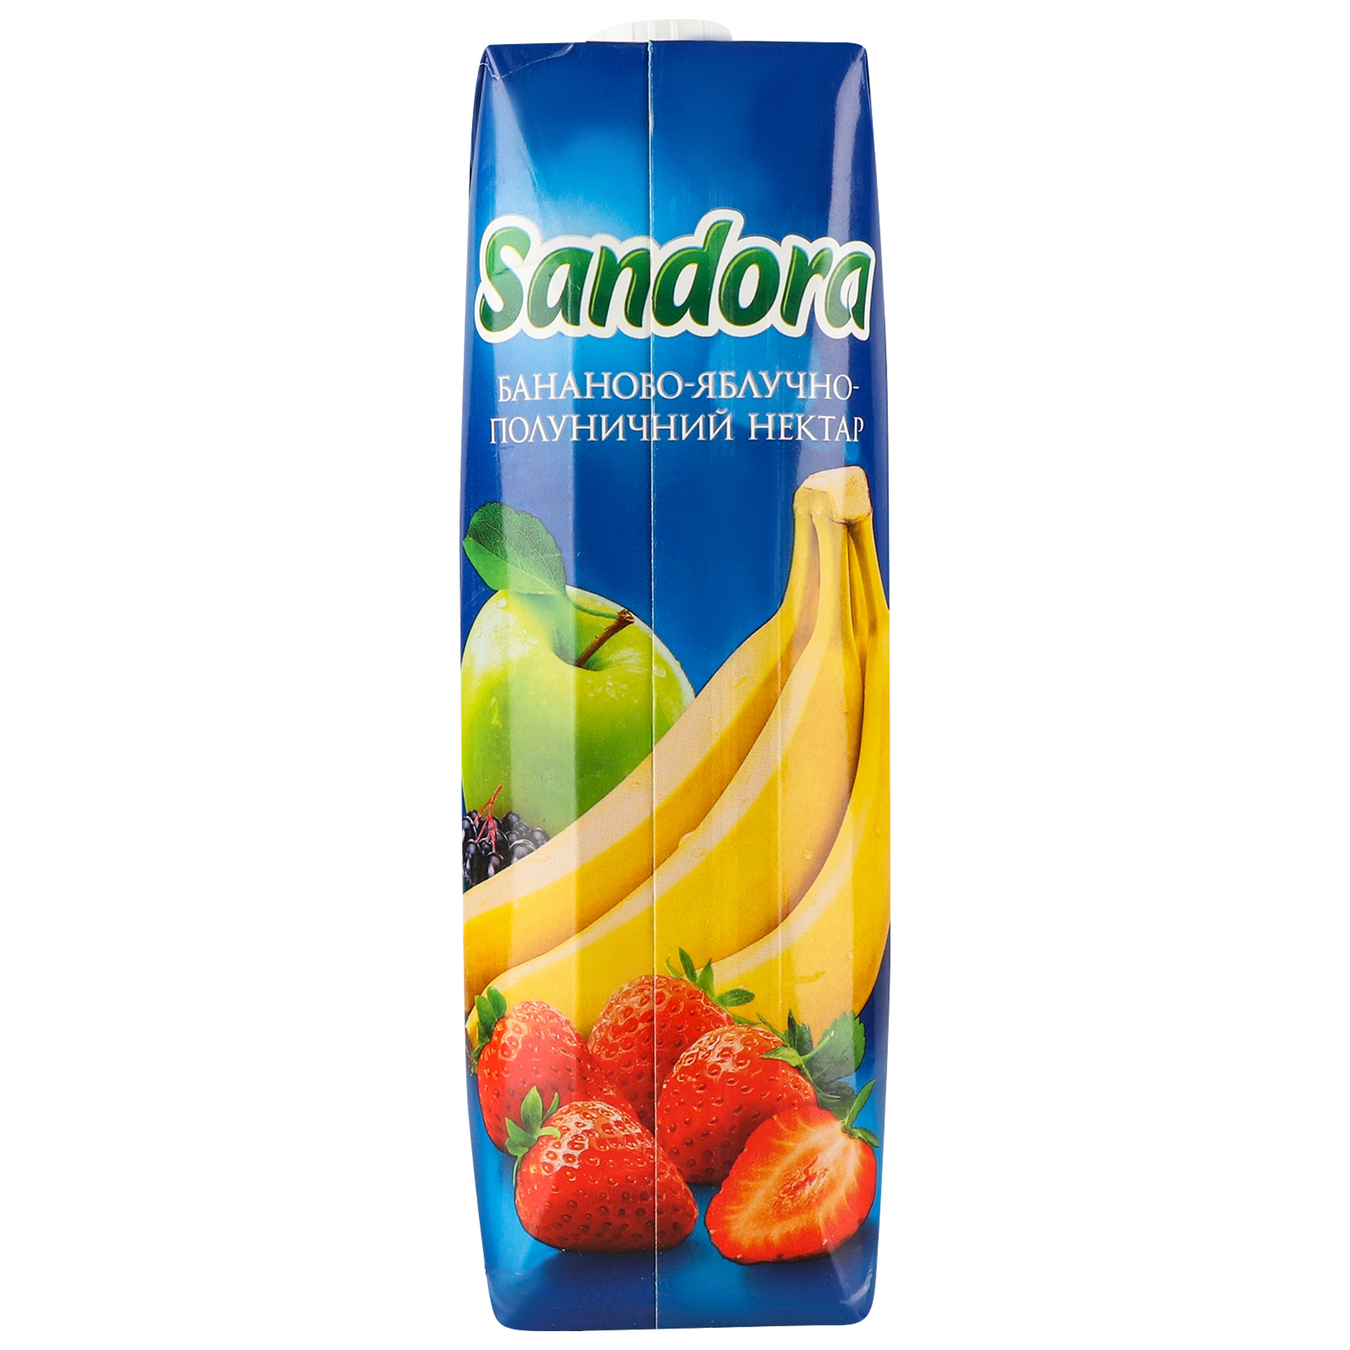 Нектар Sandora Бананово-яблочно-клубничный 0,95л 6